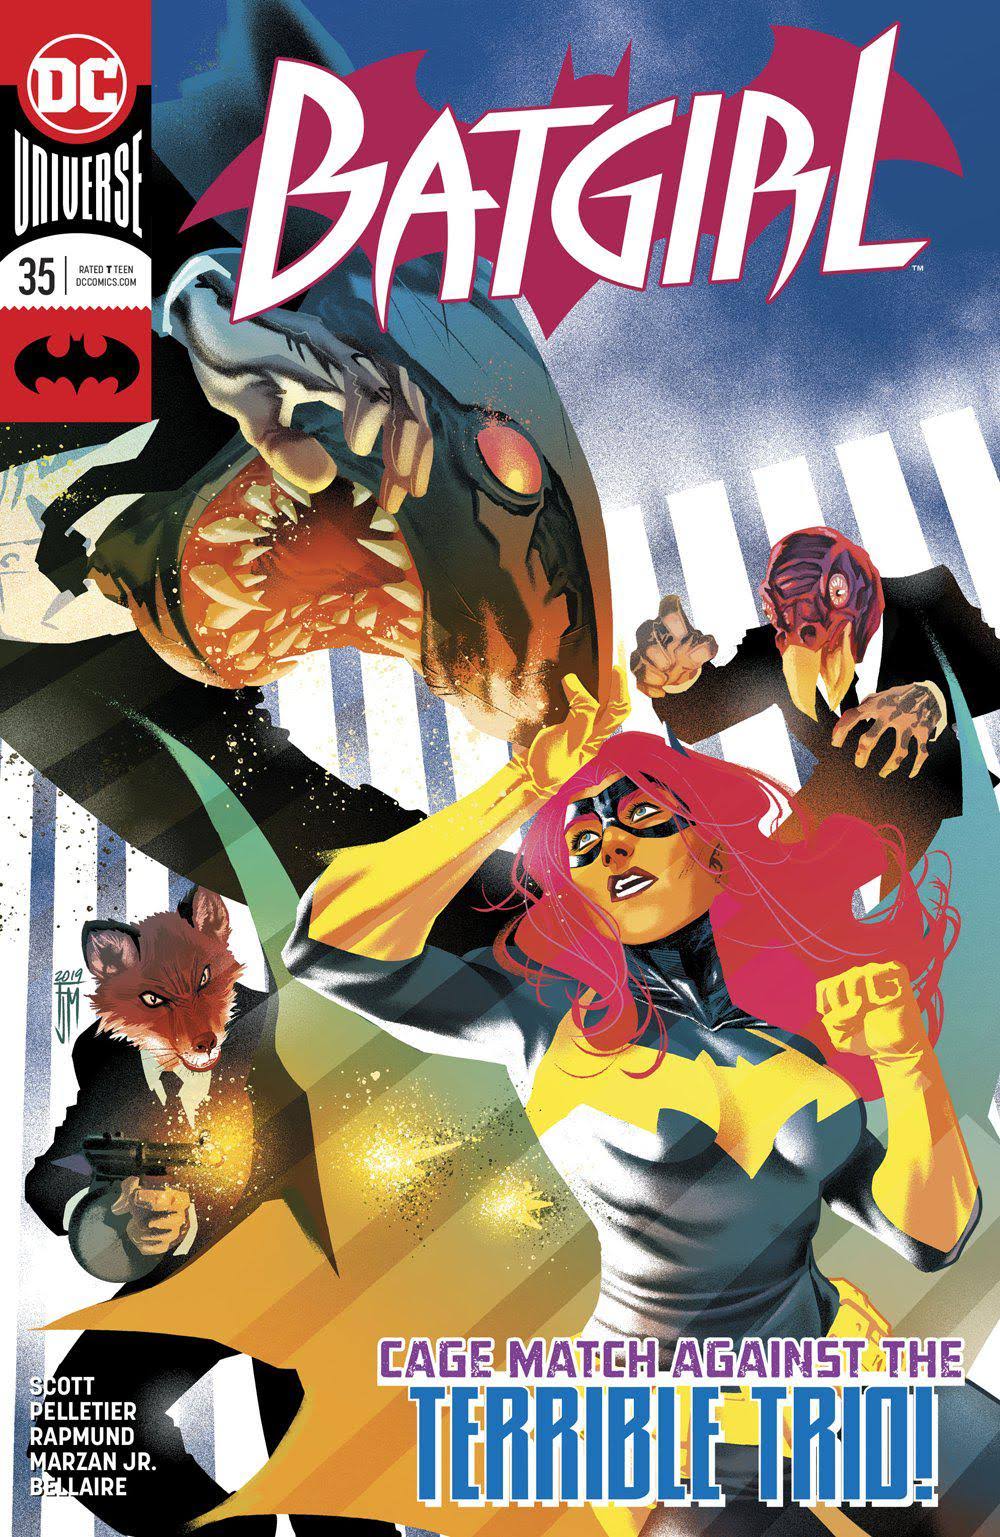 Batgirl: Rebirth (2016) #1 - DC Comics